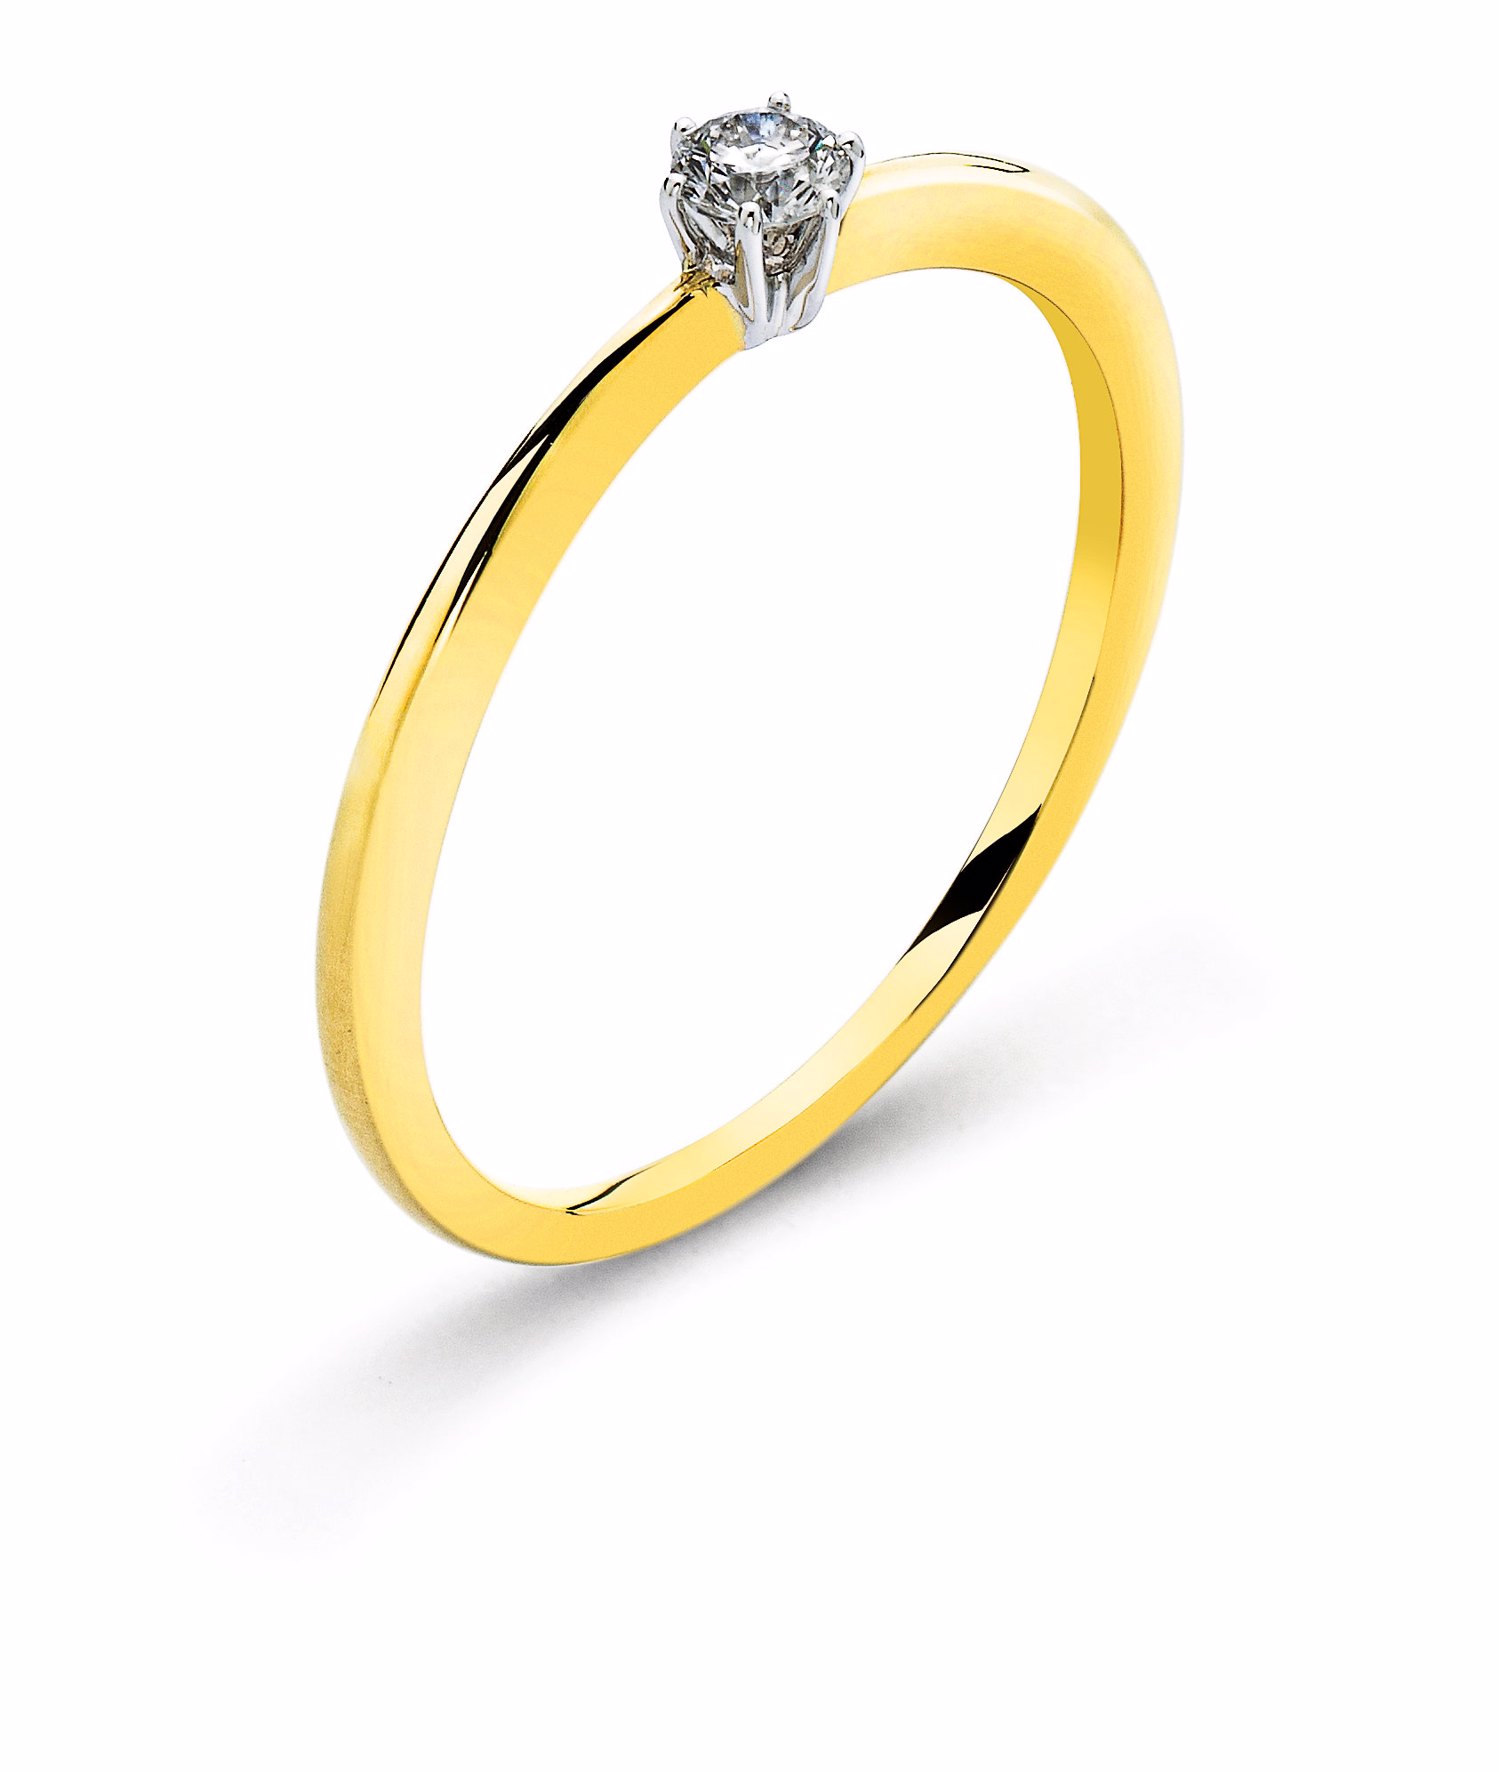 AURONOS Prestige Bague solitaire en or jaune 18K, sertie d'un diamant en or blanc 0.15ct